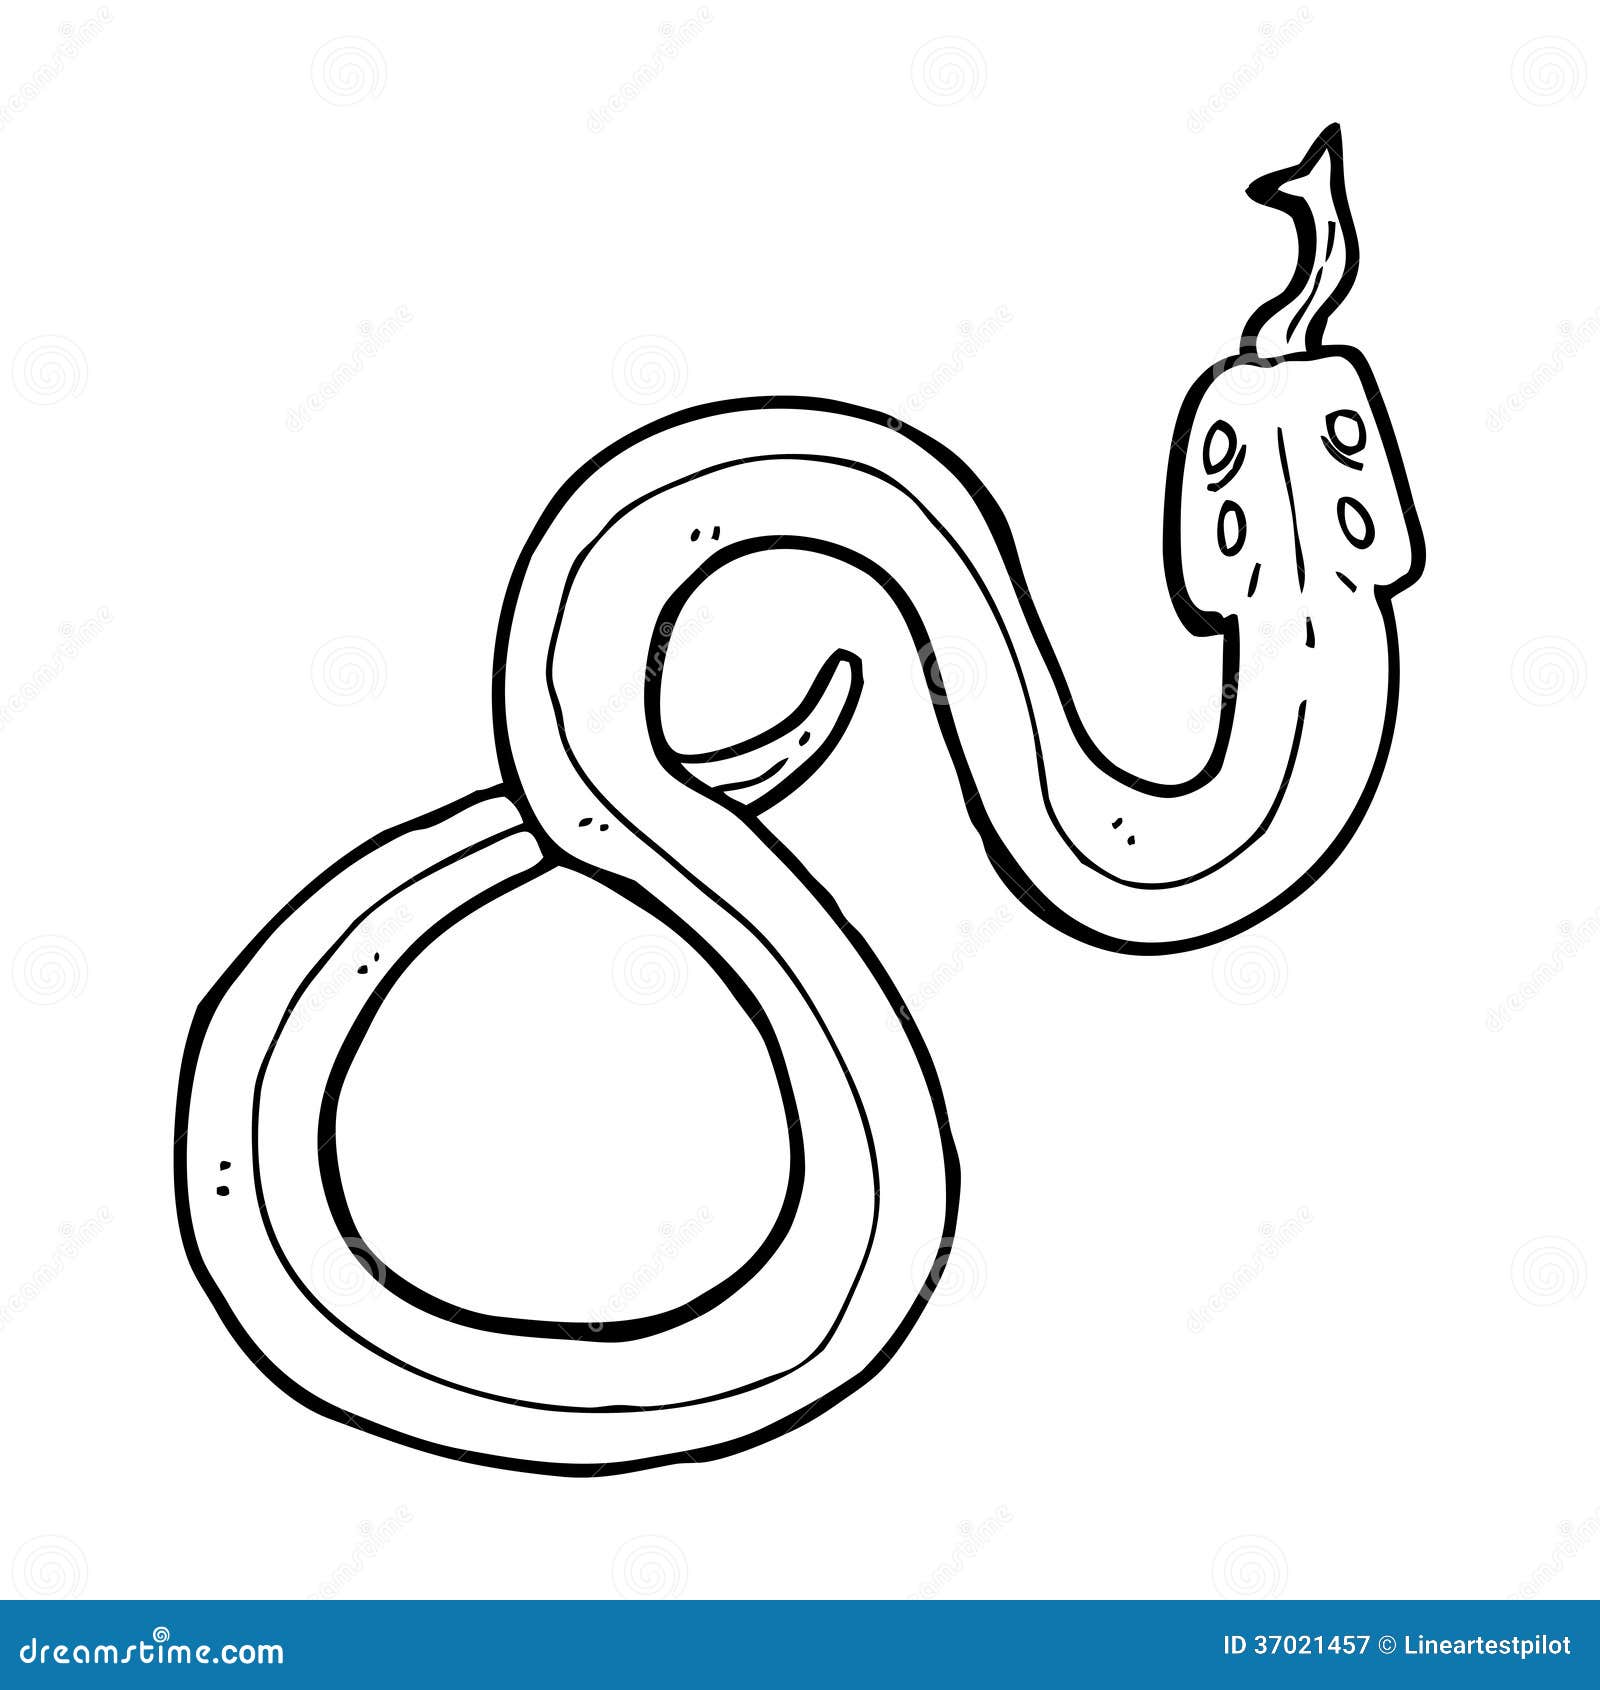 Cartoon snake stock illustration. Illustration of clip - 37021457